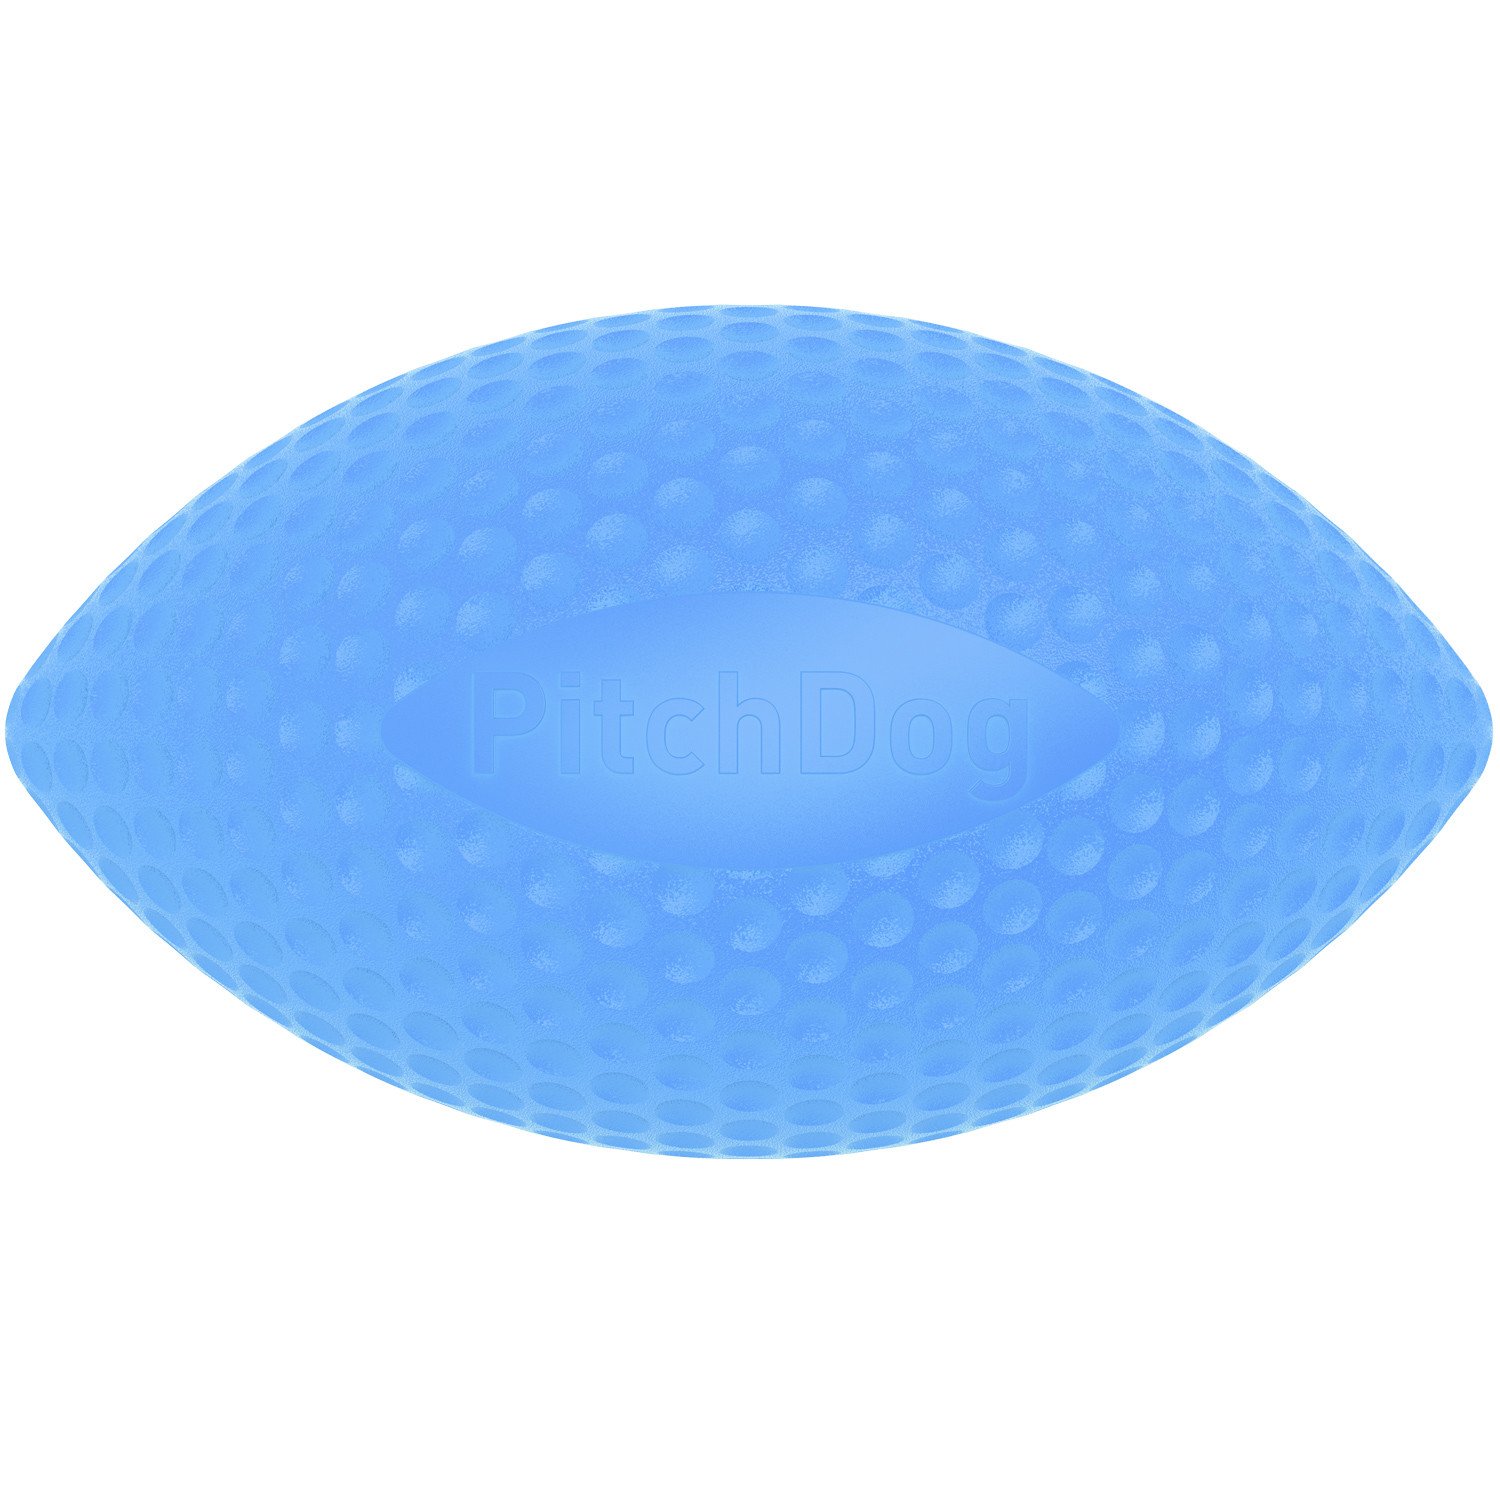 PitchDog míček, průměr 9 cm, modrý